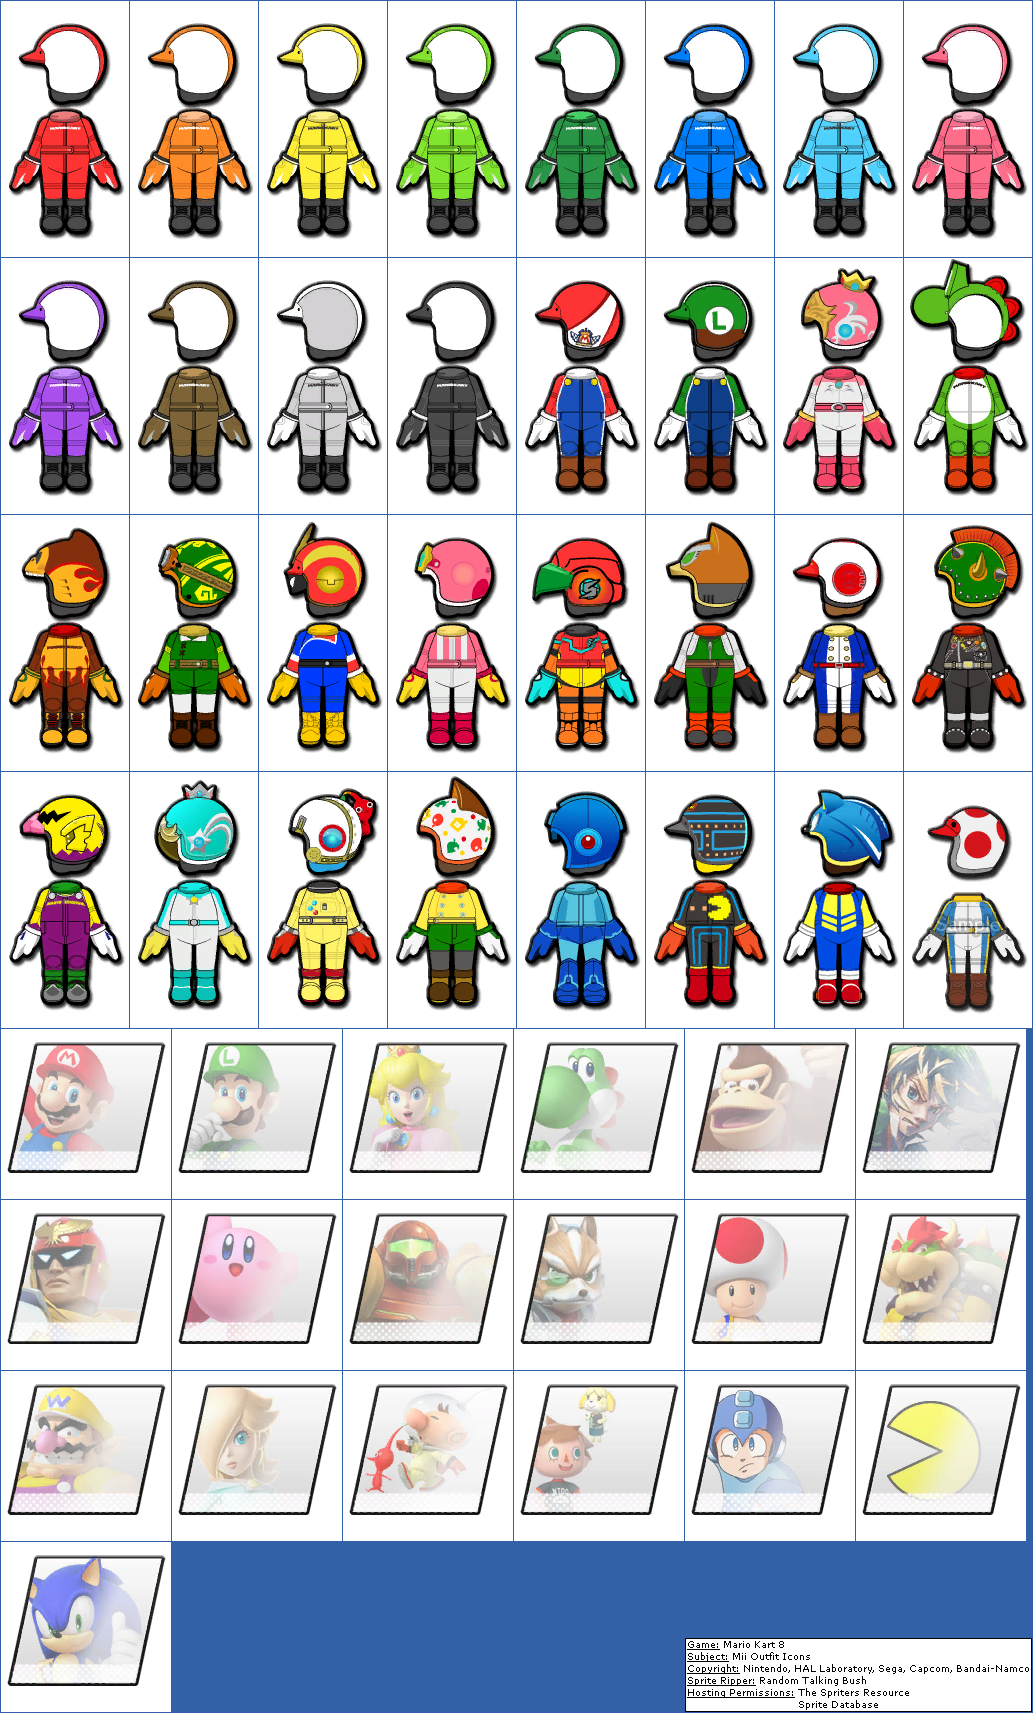 Mario Kart 8 - Mii Outfit Icons